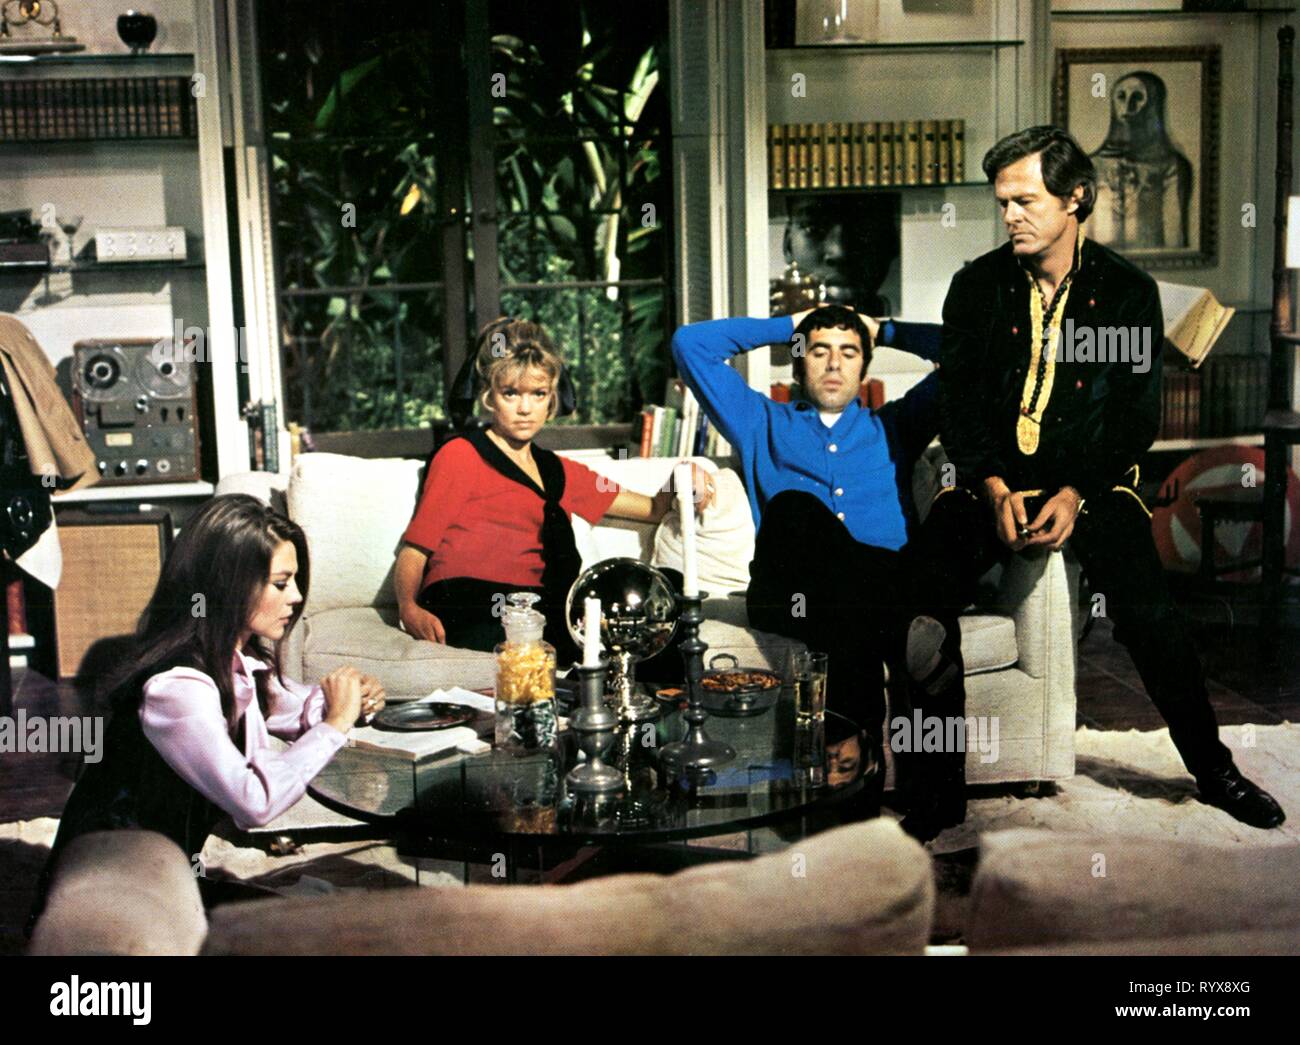 Holz, Cannon, Gould, CULP, Bob und Carol und Ted und Alice, 1969 Stockfoto